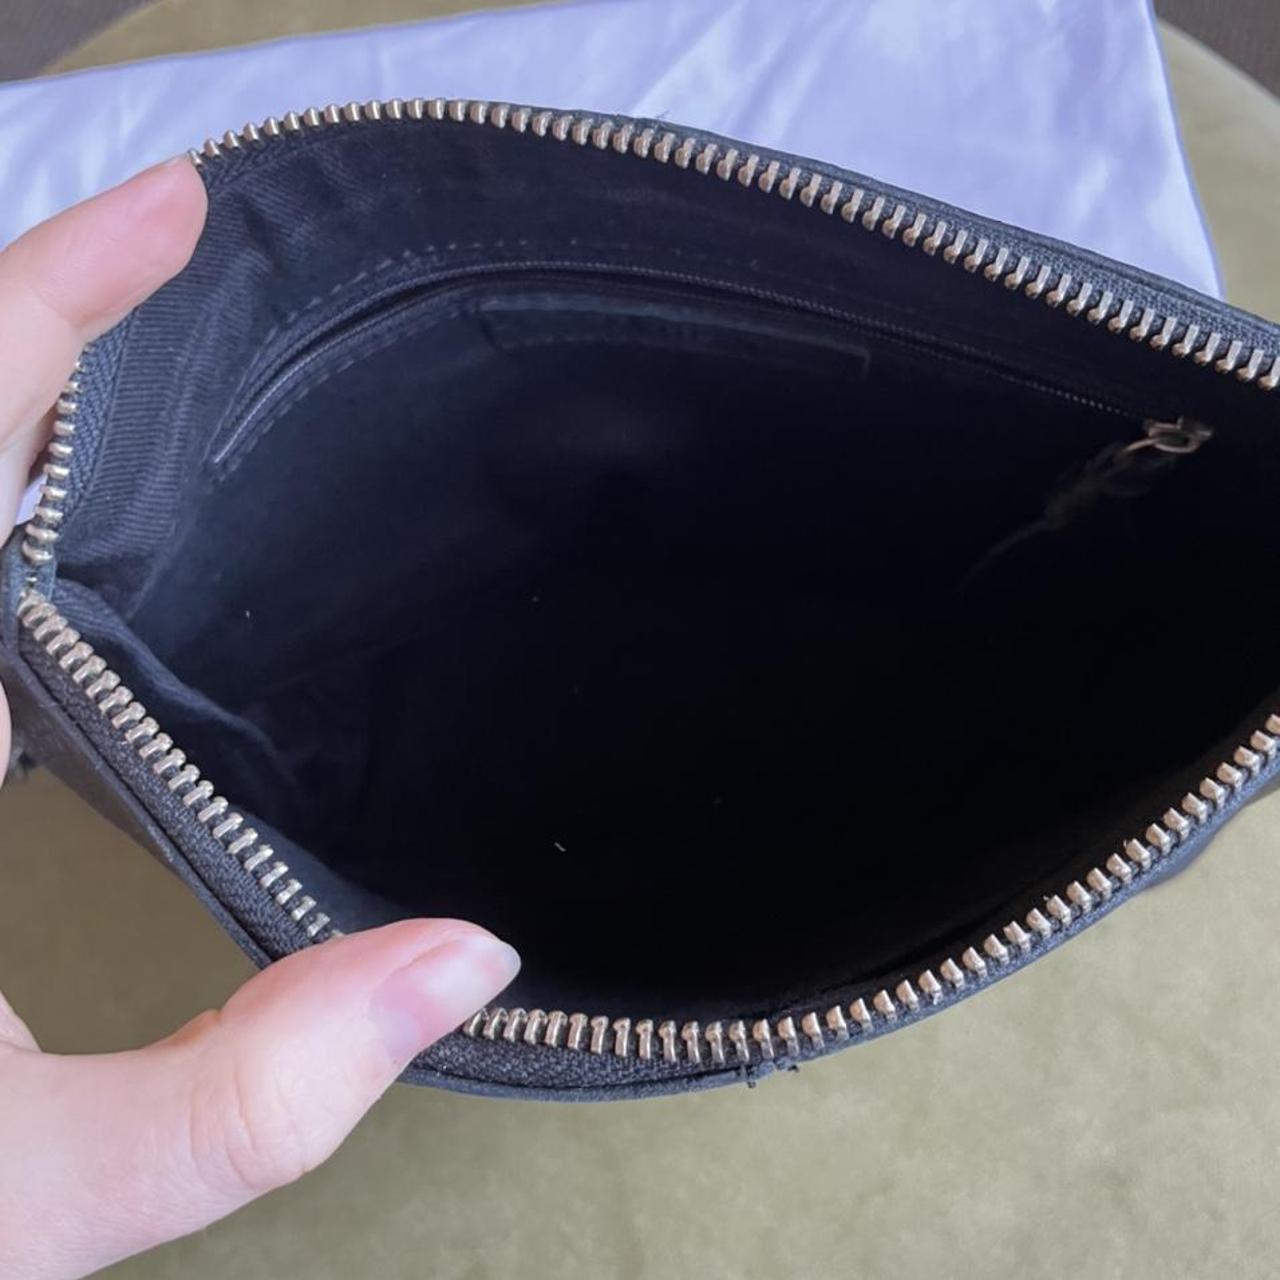 MORRISON Black leather pouch Detachable wrist... - Depop